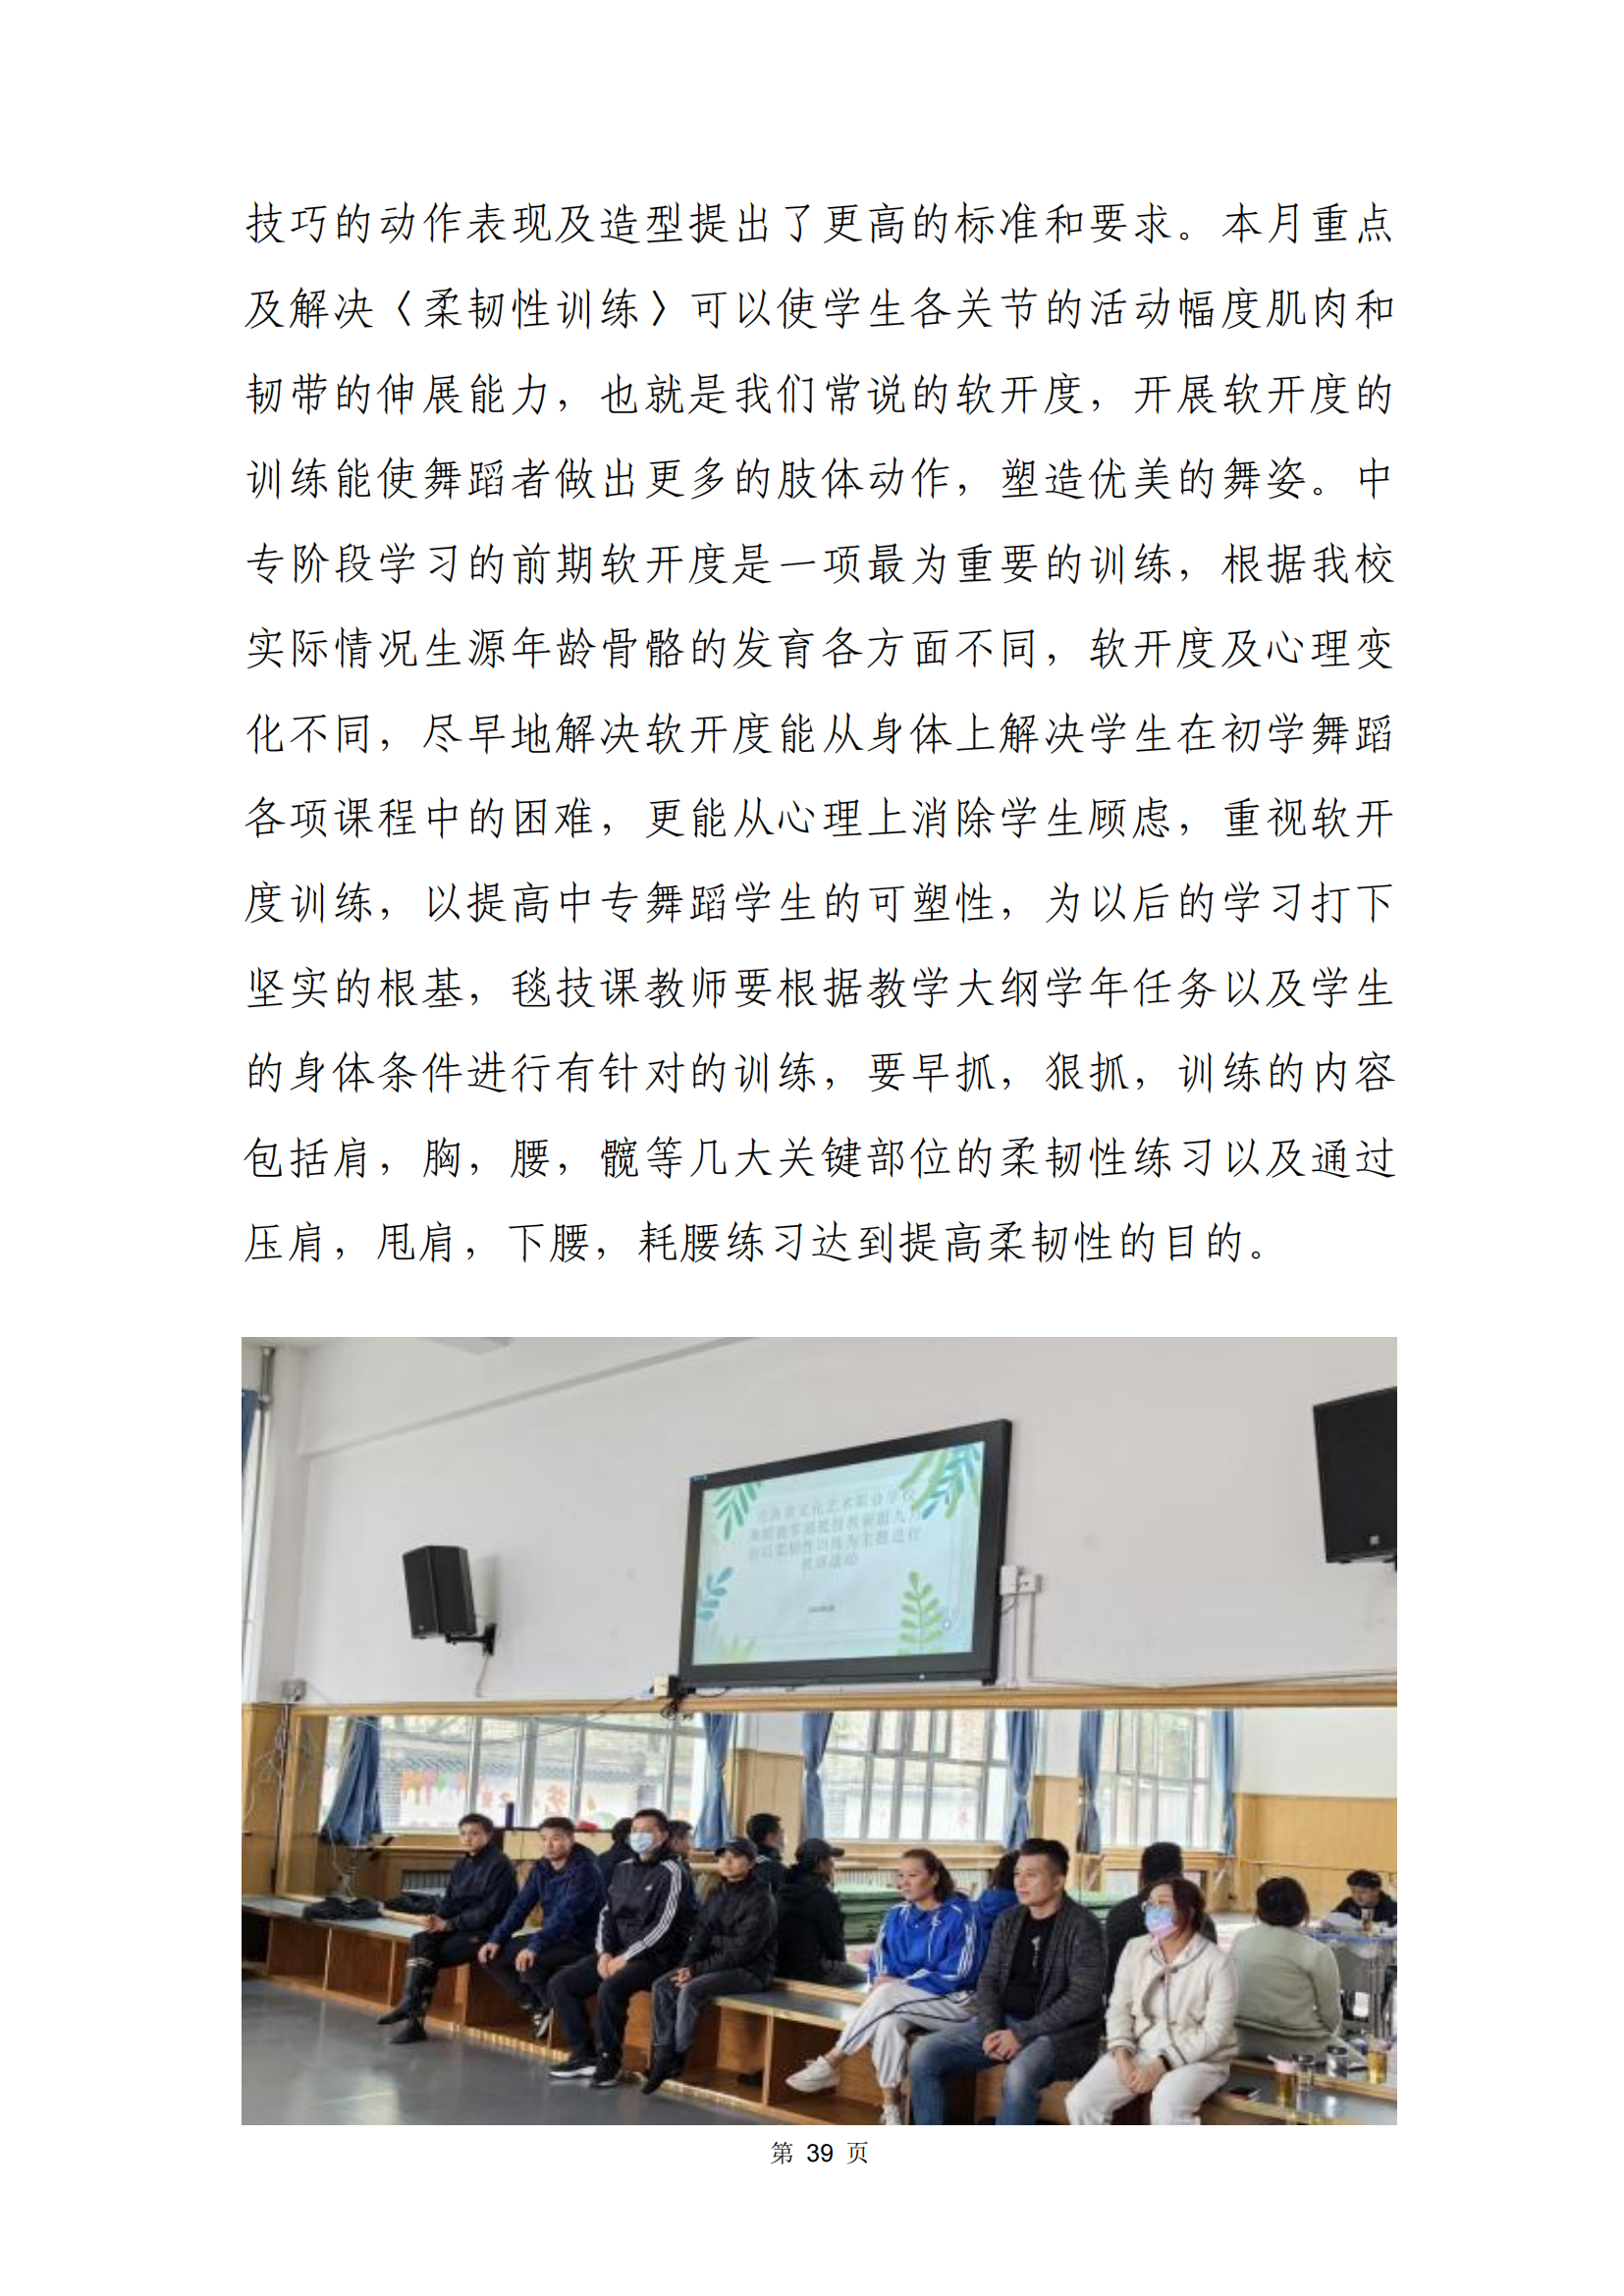 青海省文化艺术职业学校教育质量年报_46.png